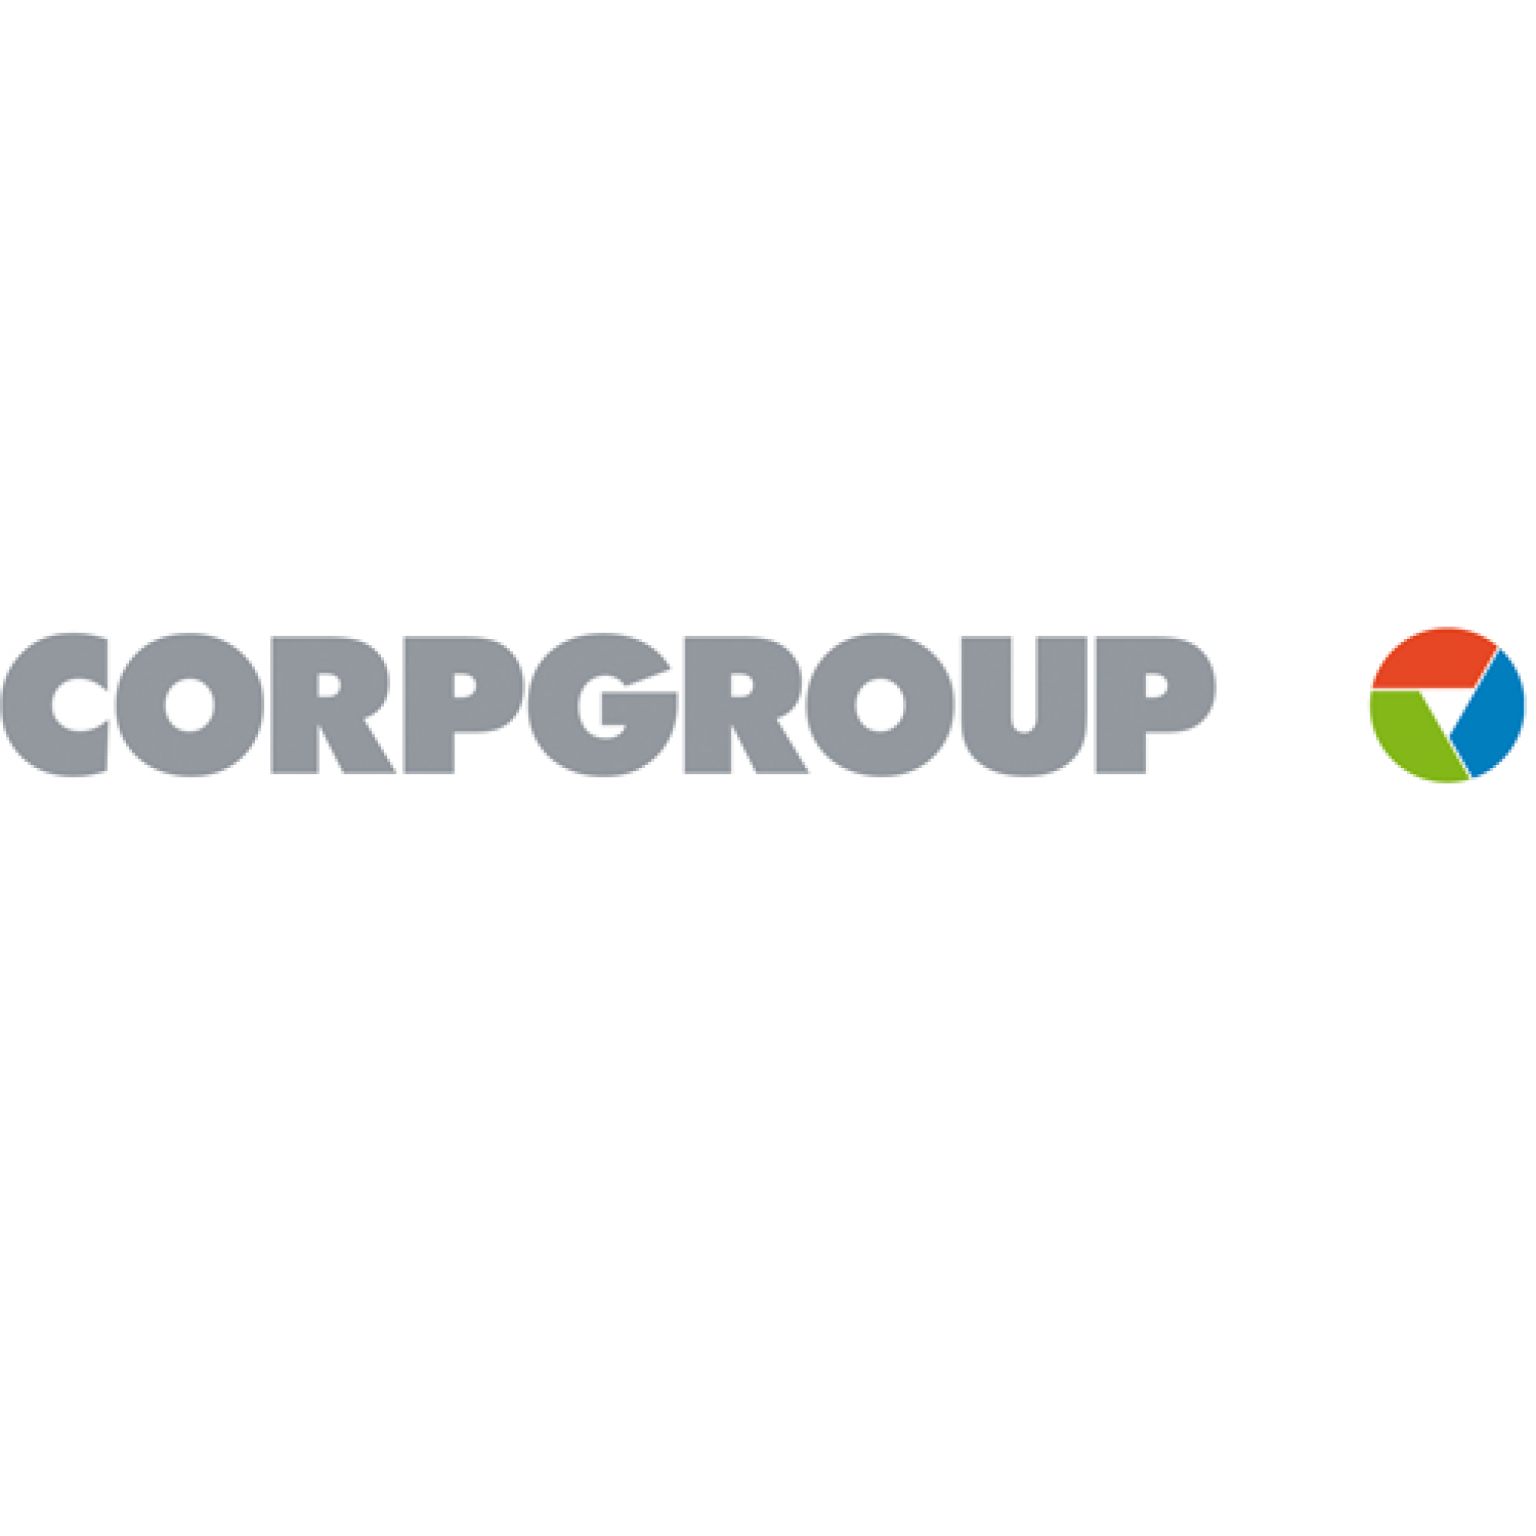 Corpgroup